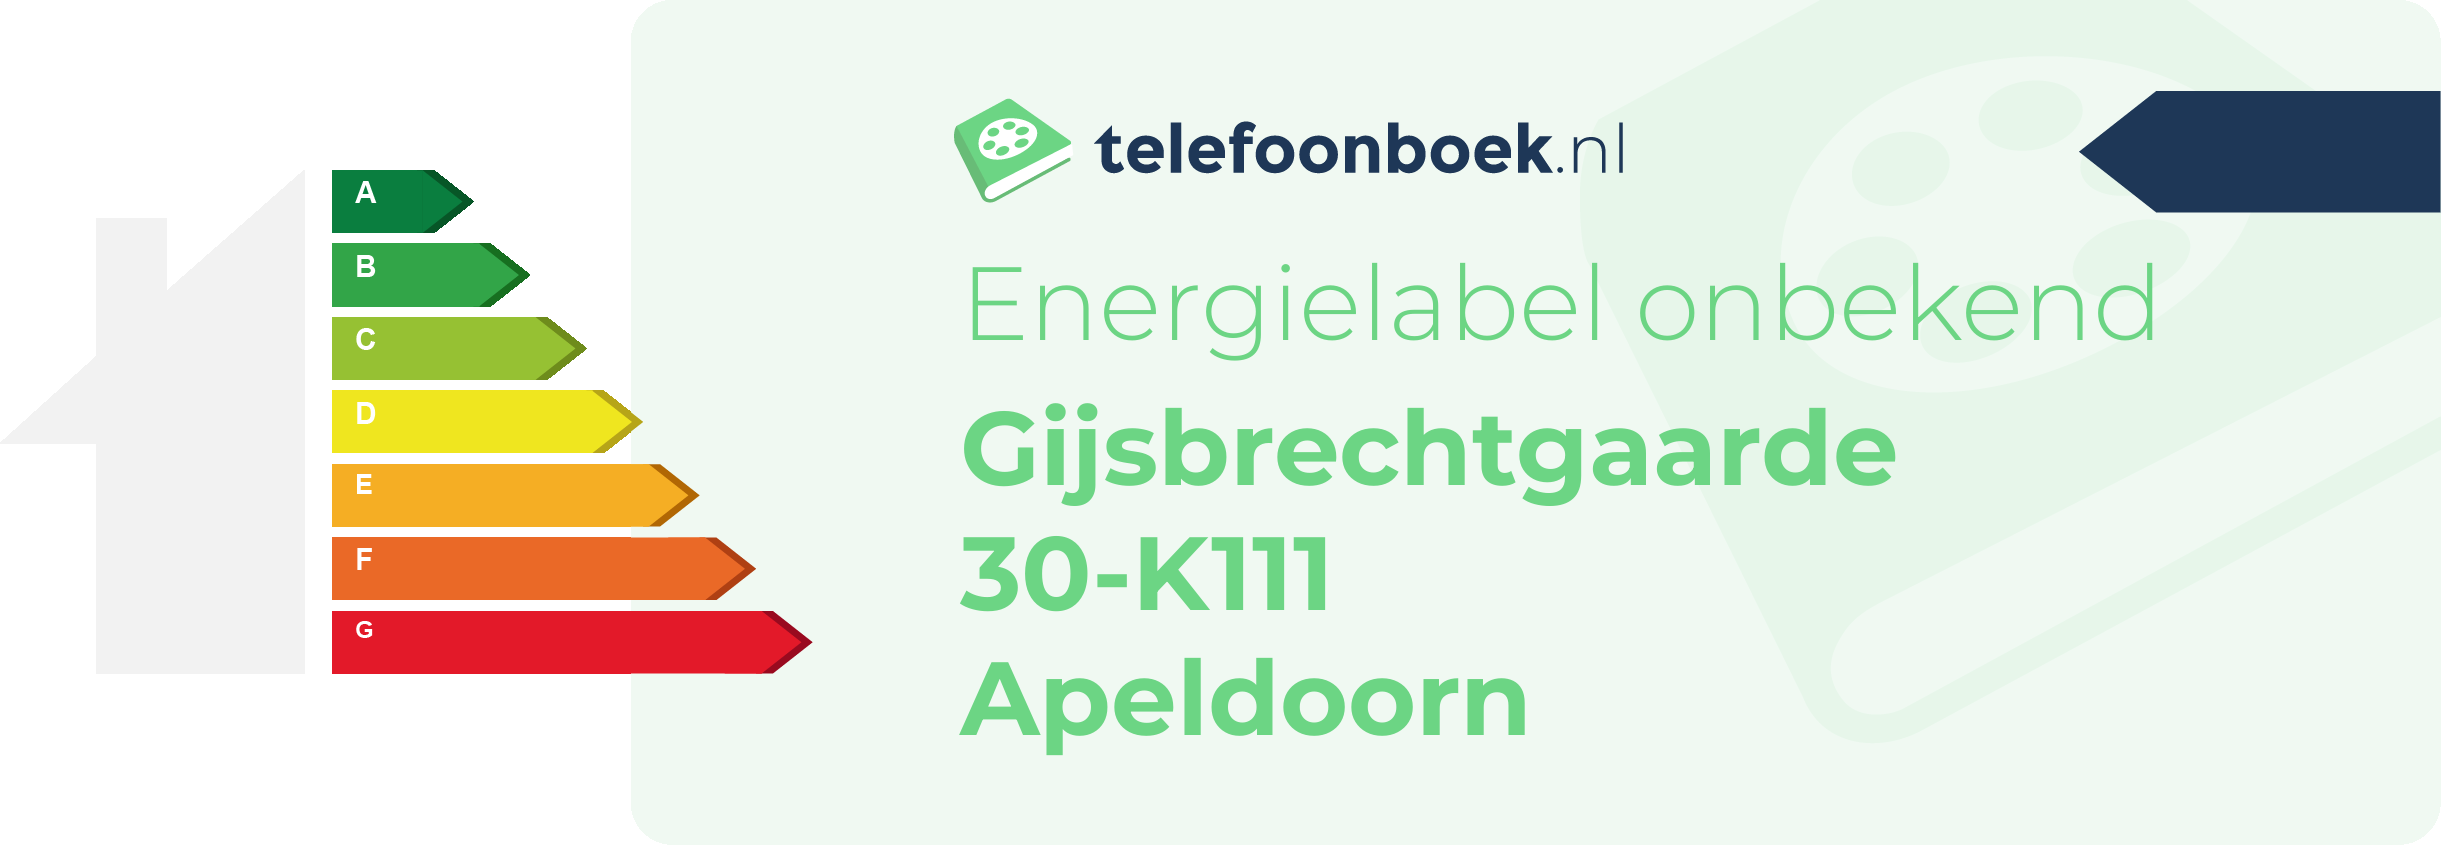 Energielabel Gijsbrechtgaarde 30-K111 Apeldoorn